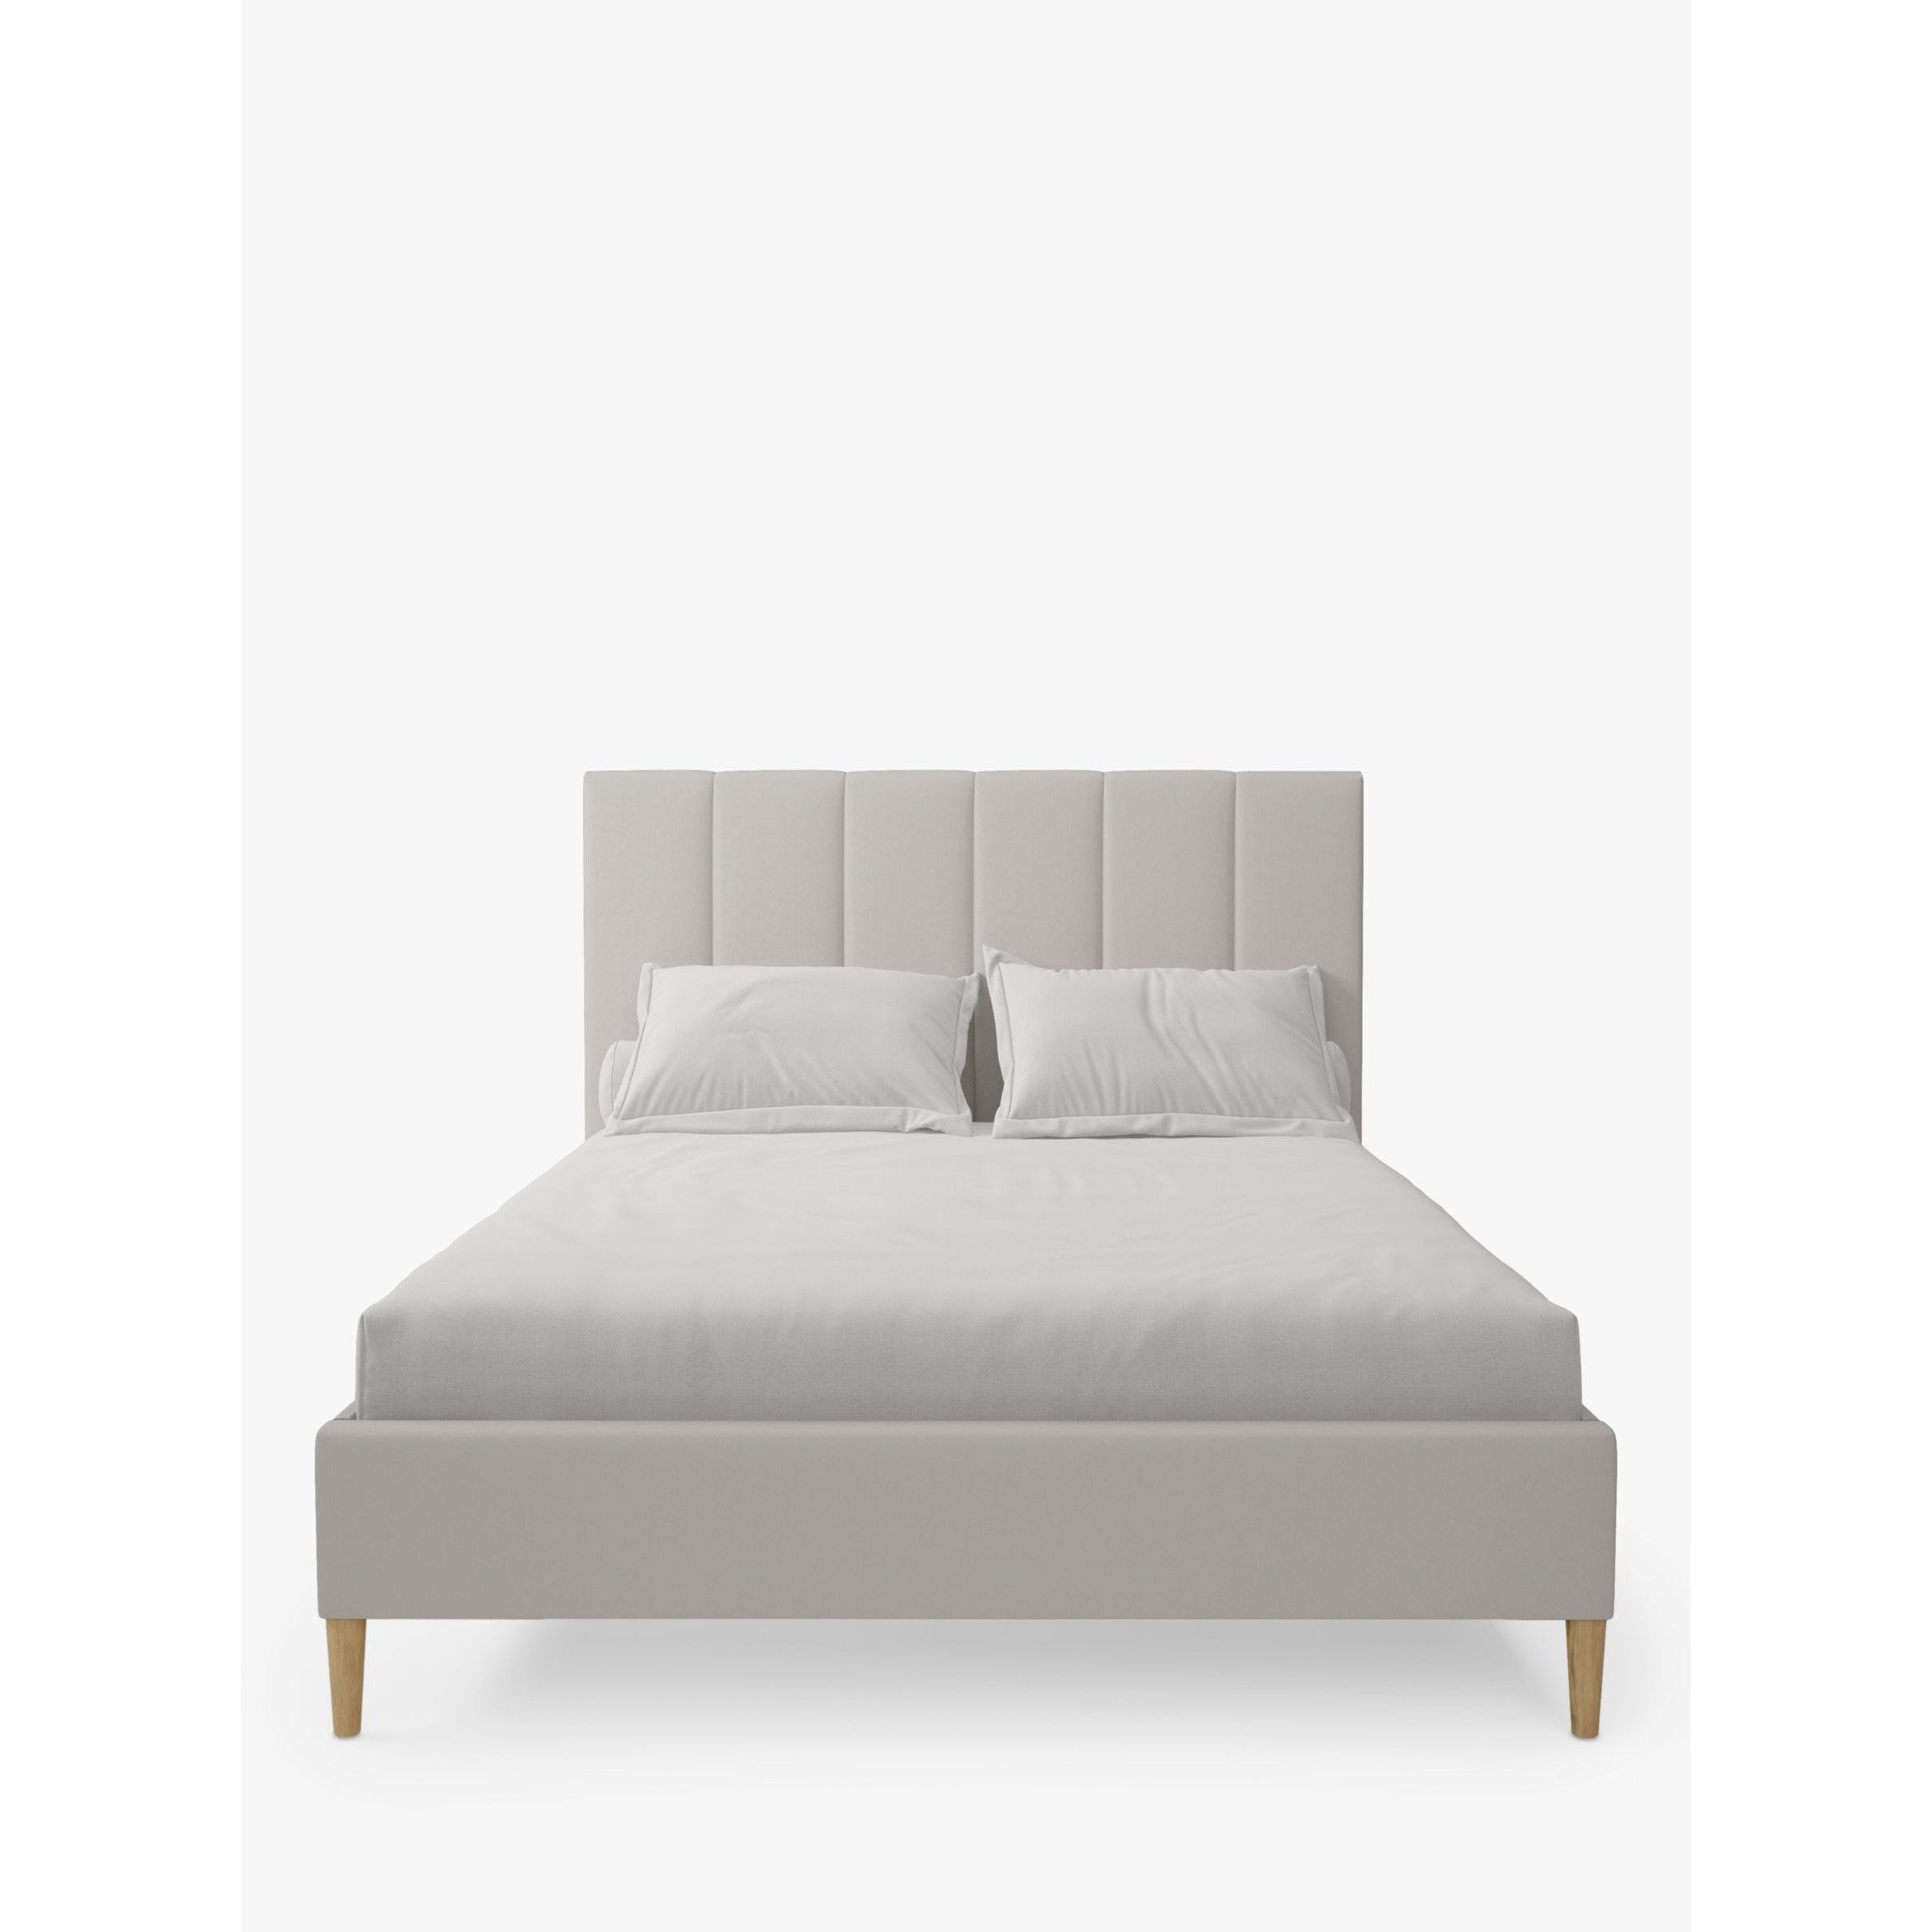 Koti Home Avon Upholstered Bed Frame, King Size - image 1